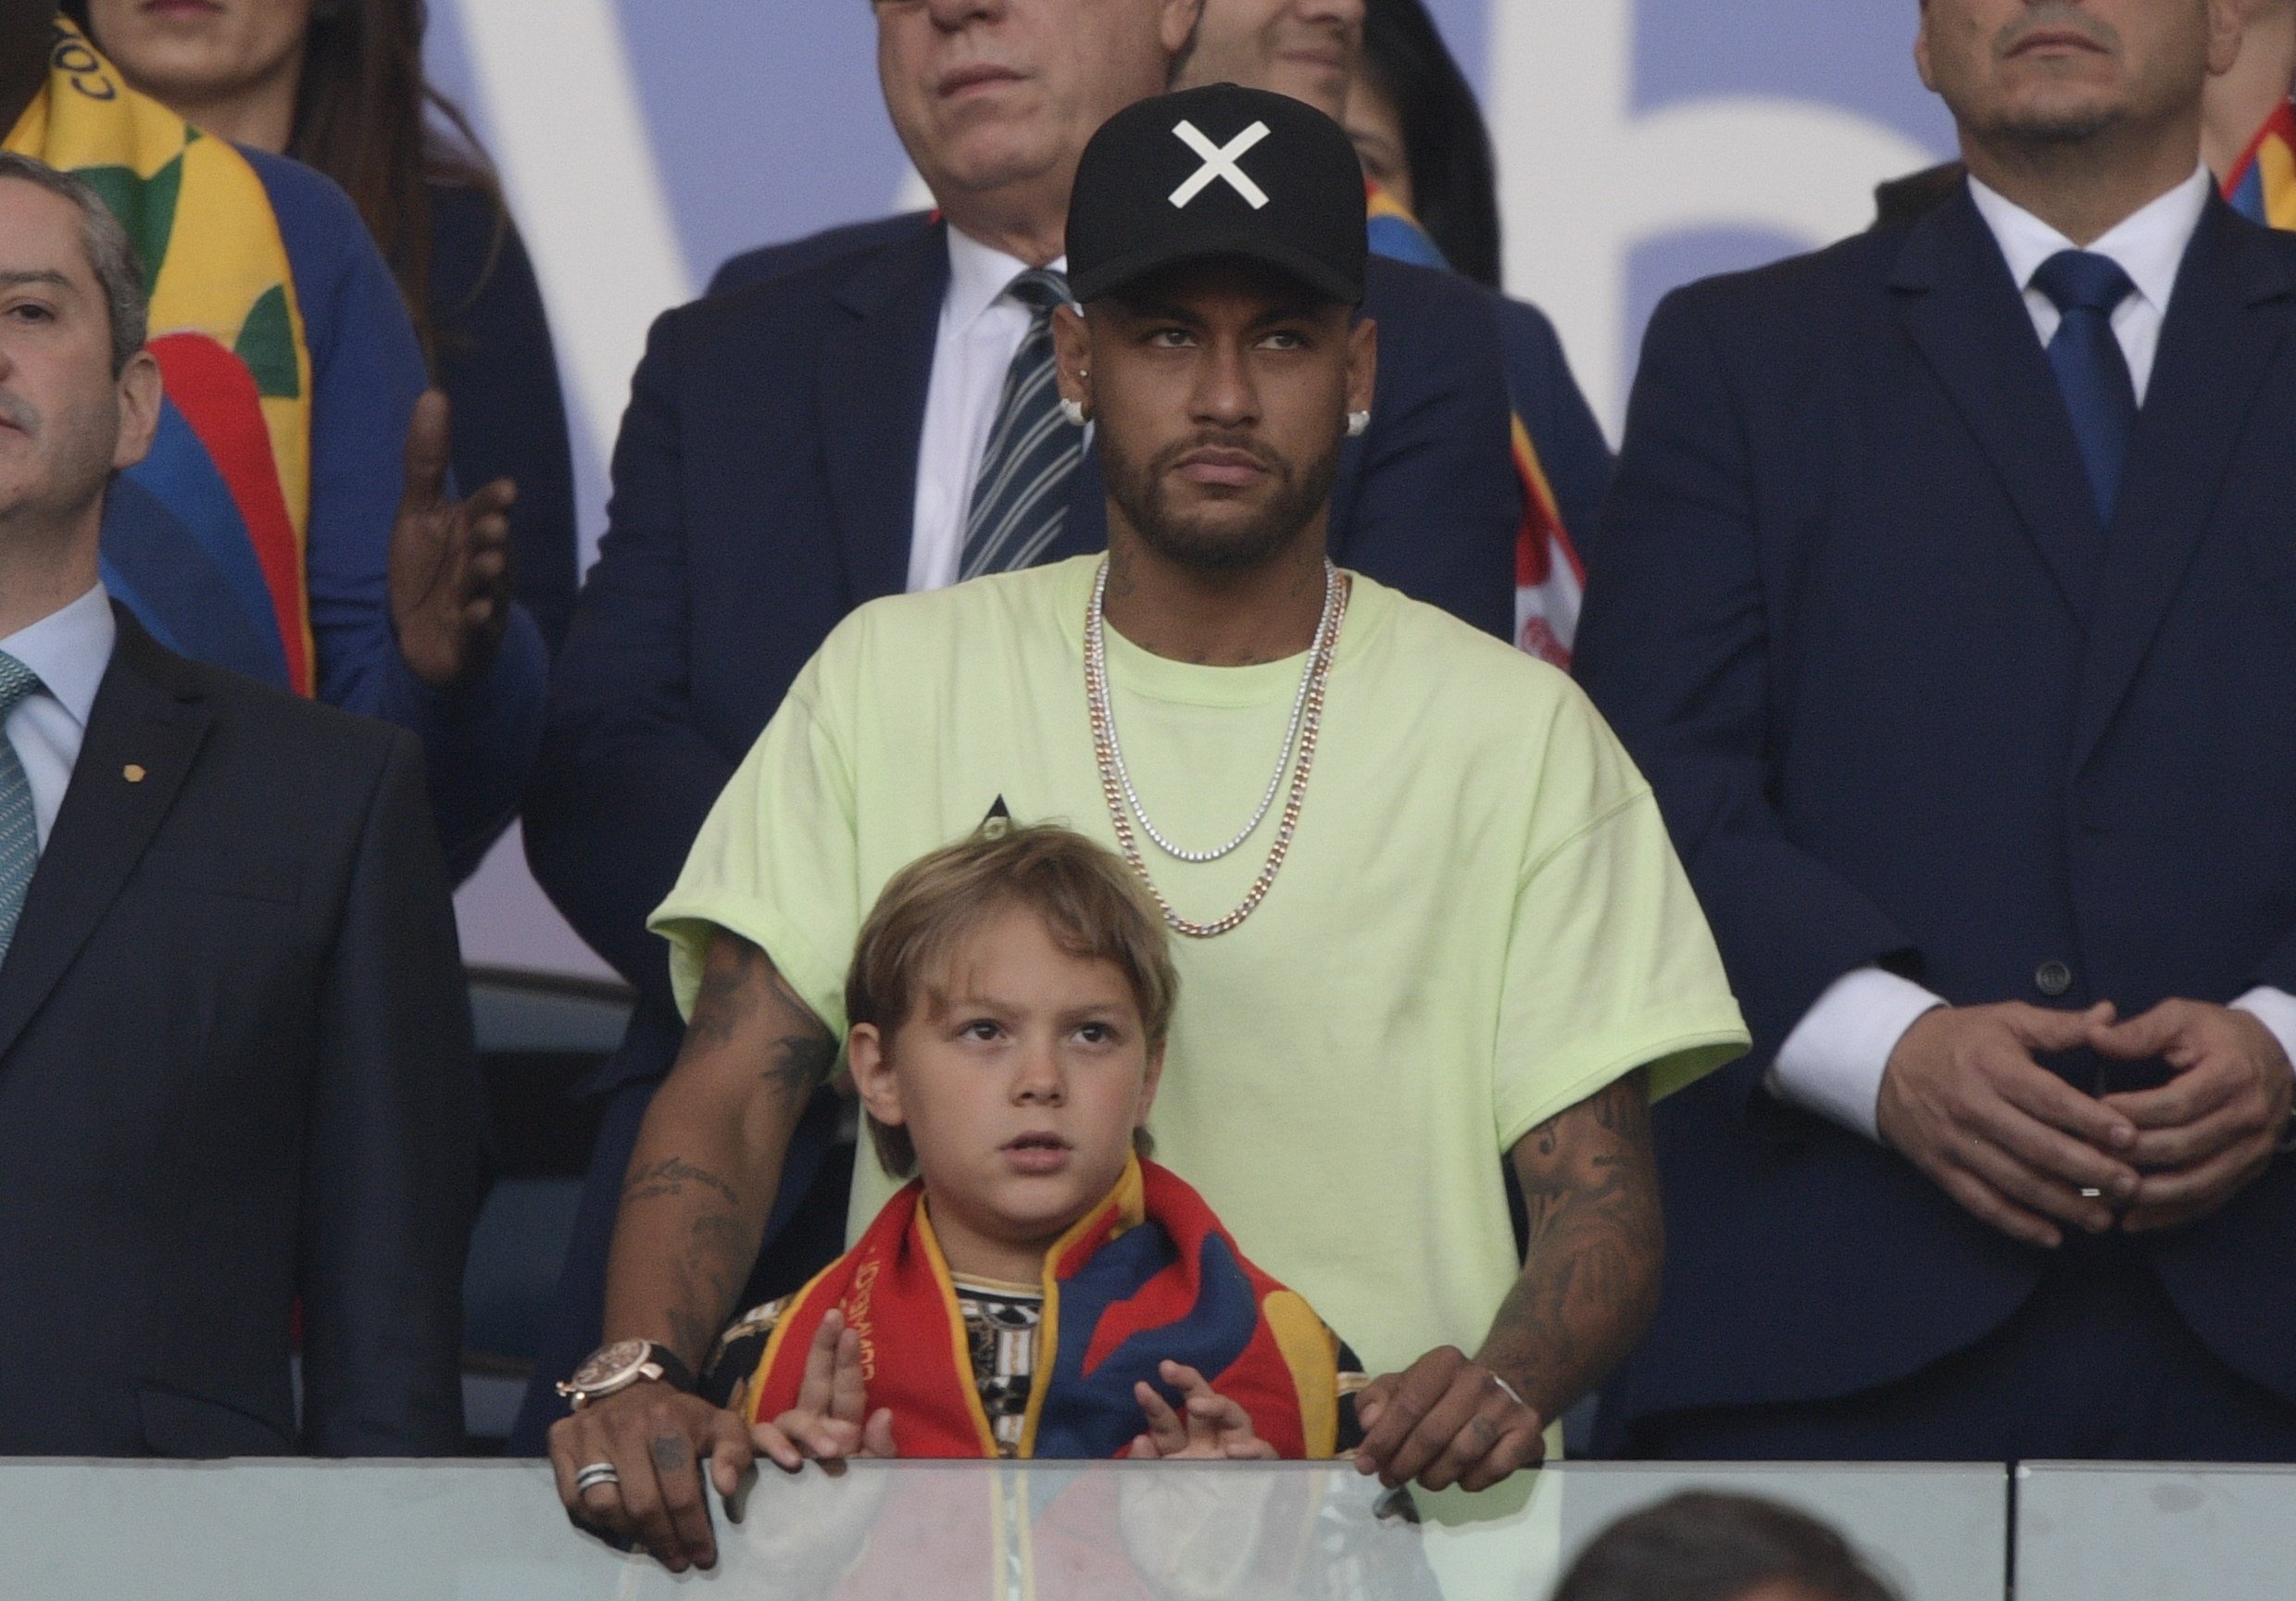 Neymar junto a su hijo David Lucca da Silva en el palco del estadio Maracaná. (Foto Prensa Libre: AFP)